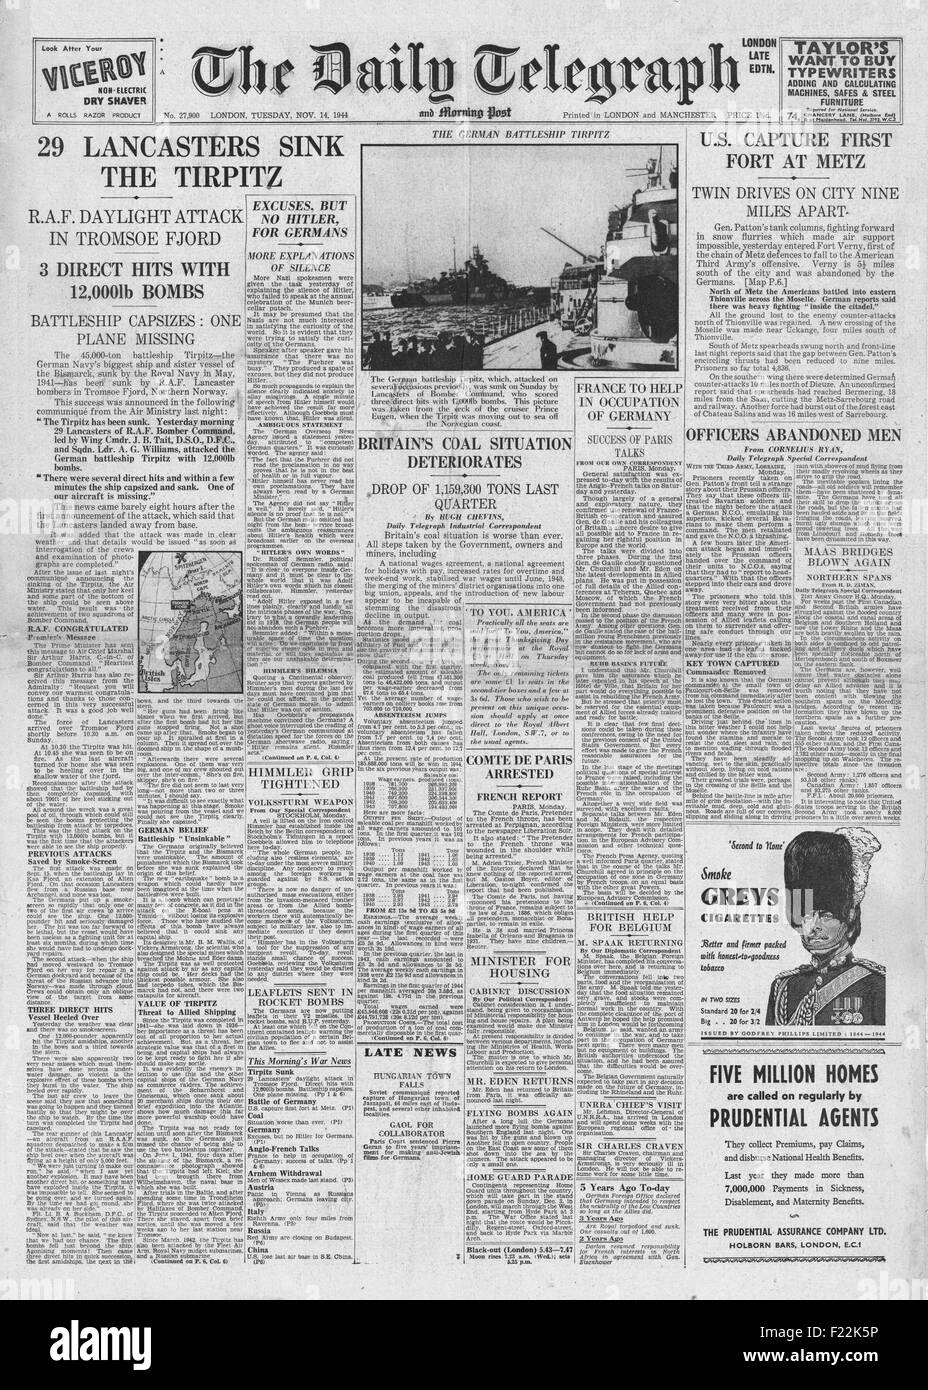 1944 daily Telegraph Titelseite der deutschen Schlachtschiff Tirpitz Berichterstattung RAF Lancasters sinken Stockfoto